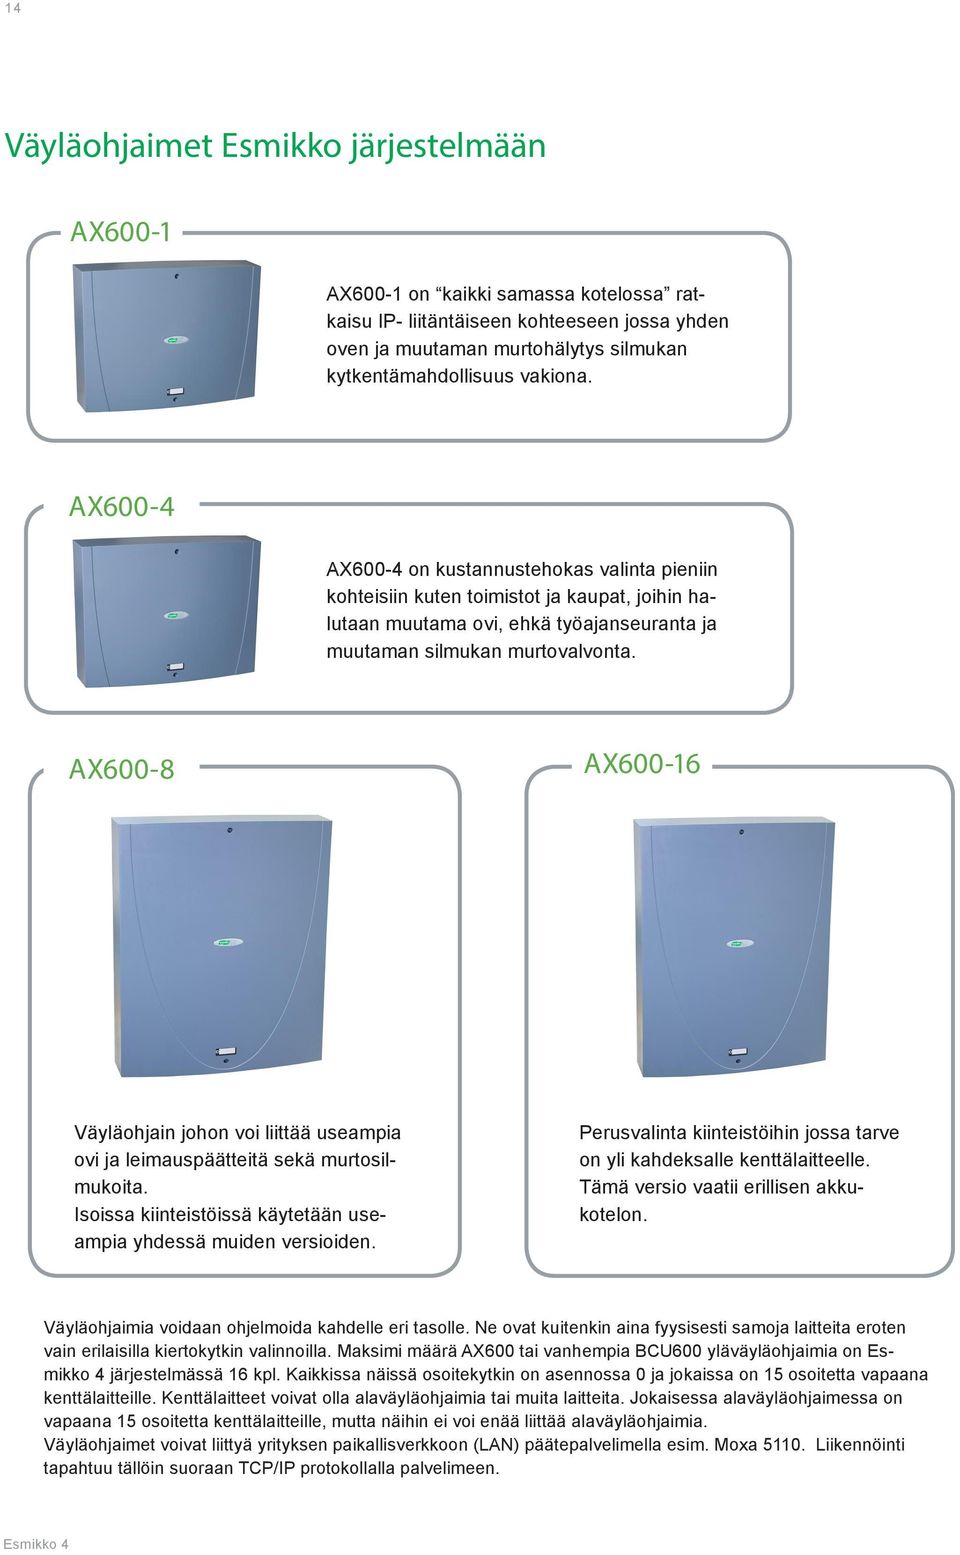 AX600-8 AX600-16 Väyläohjain johon voi liittää useampia ovi ja leimauspäätteitä sekä murtosilmukoita. Isoissa kiinteistöissä käytetään useampia yhdessä muiden versioiden.